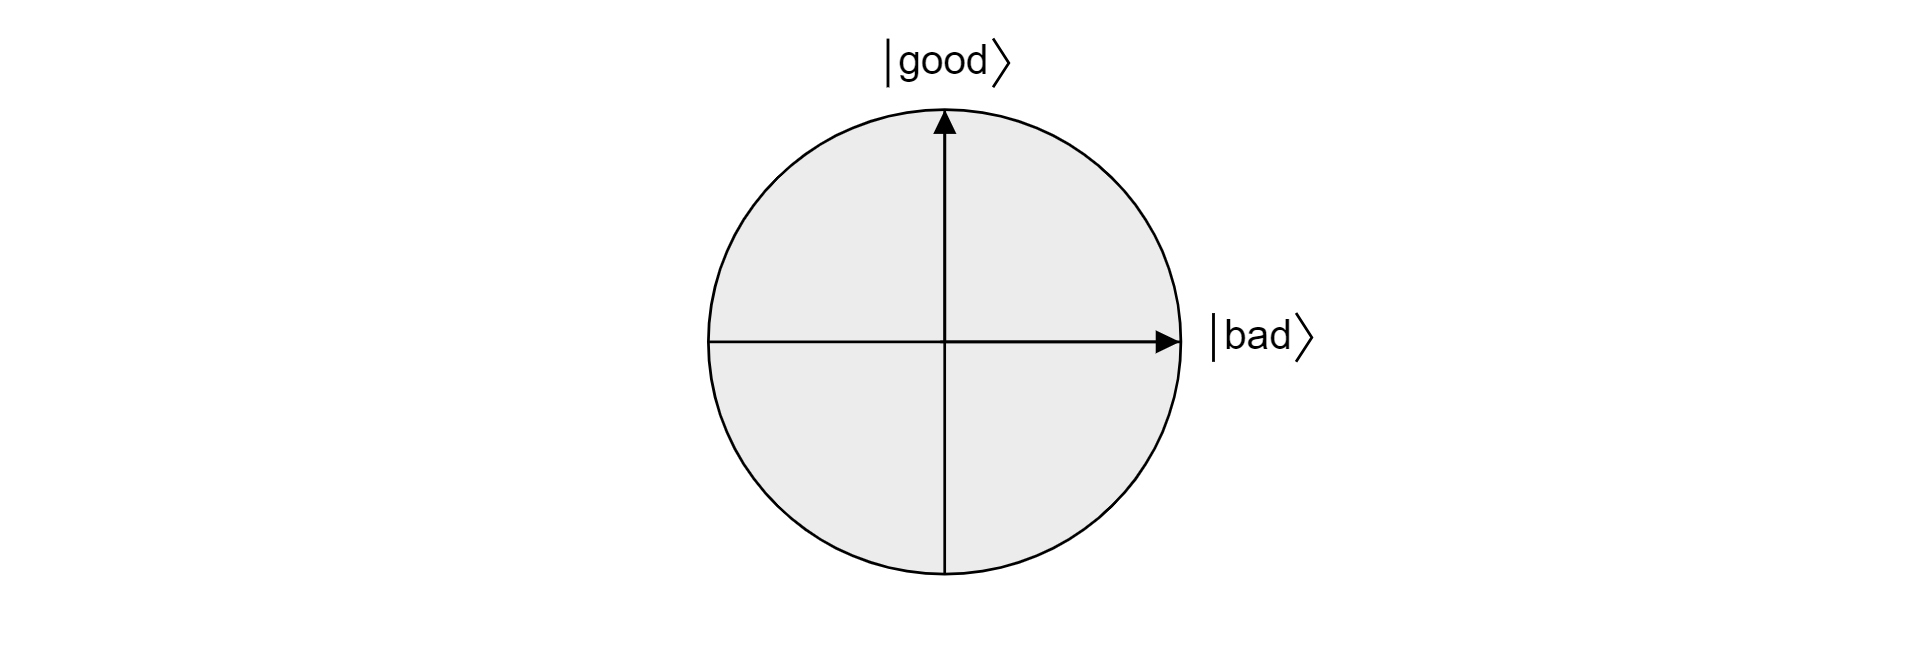 Tracciato del piano nella sfera Bloch proiettato dai vettori ortogonali buoni e cattivi.